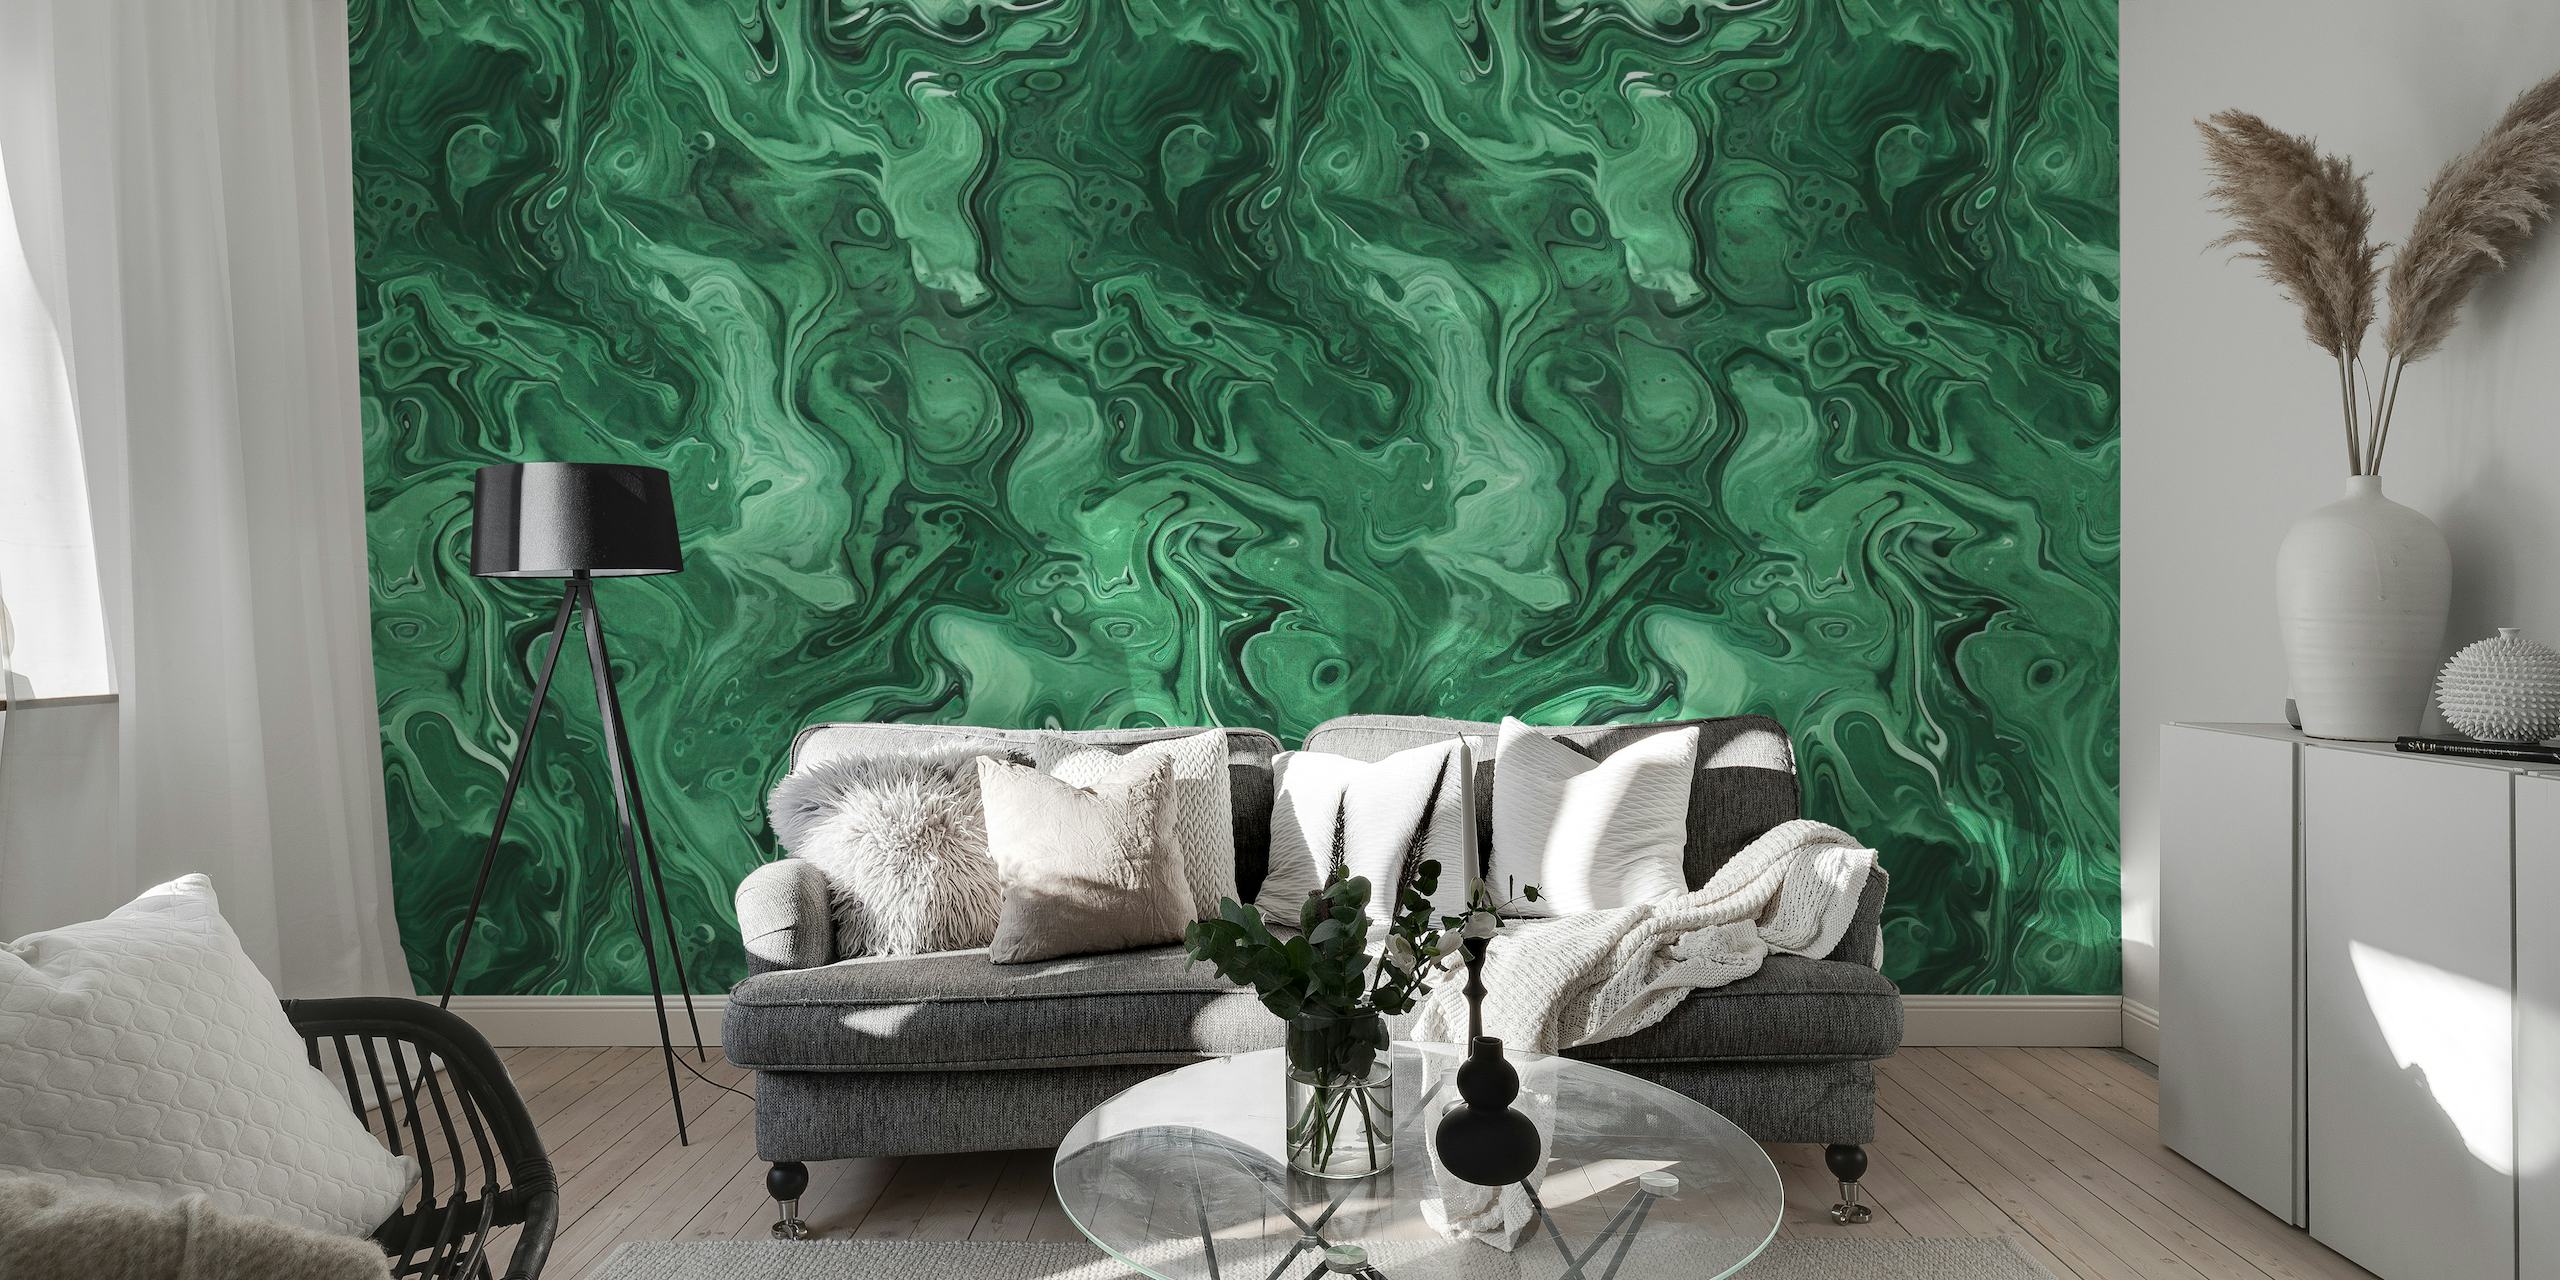 Mural de pared en acuarela con piedras preciosas de malaquita verde y motivos arremolinados de jade y esmeralda